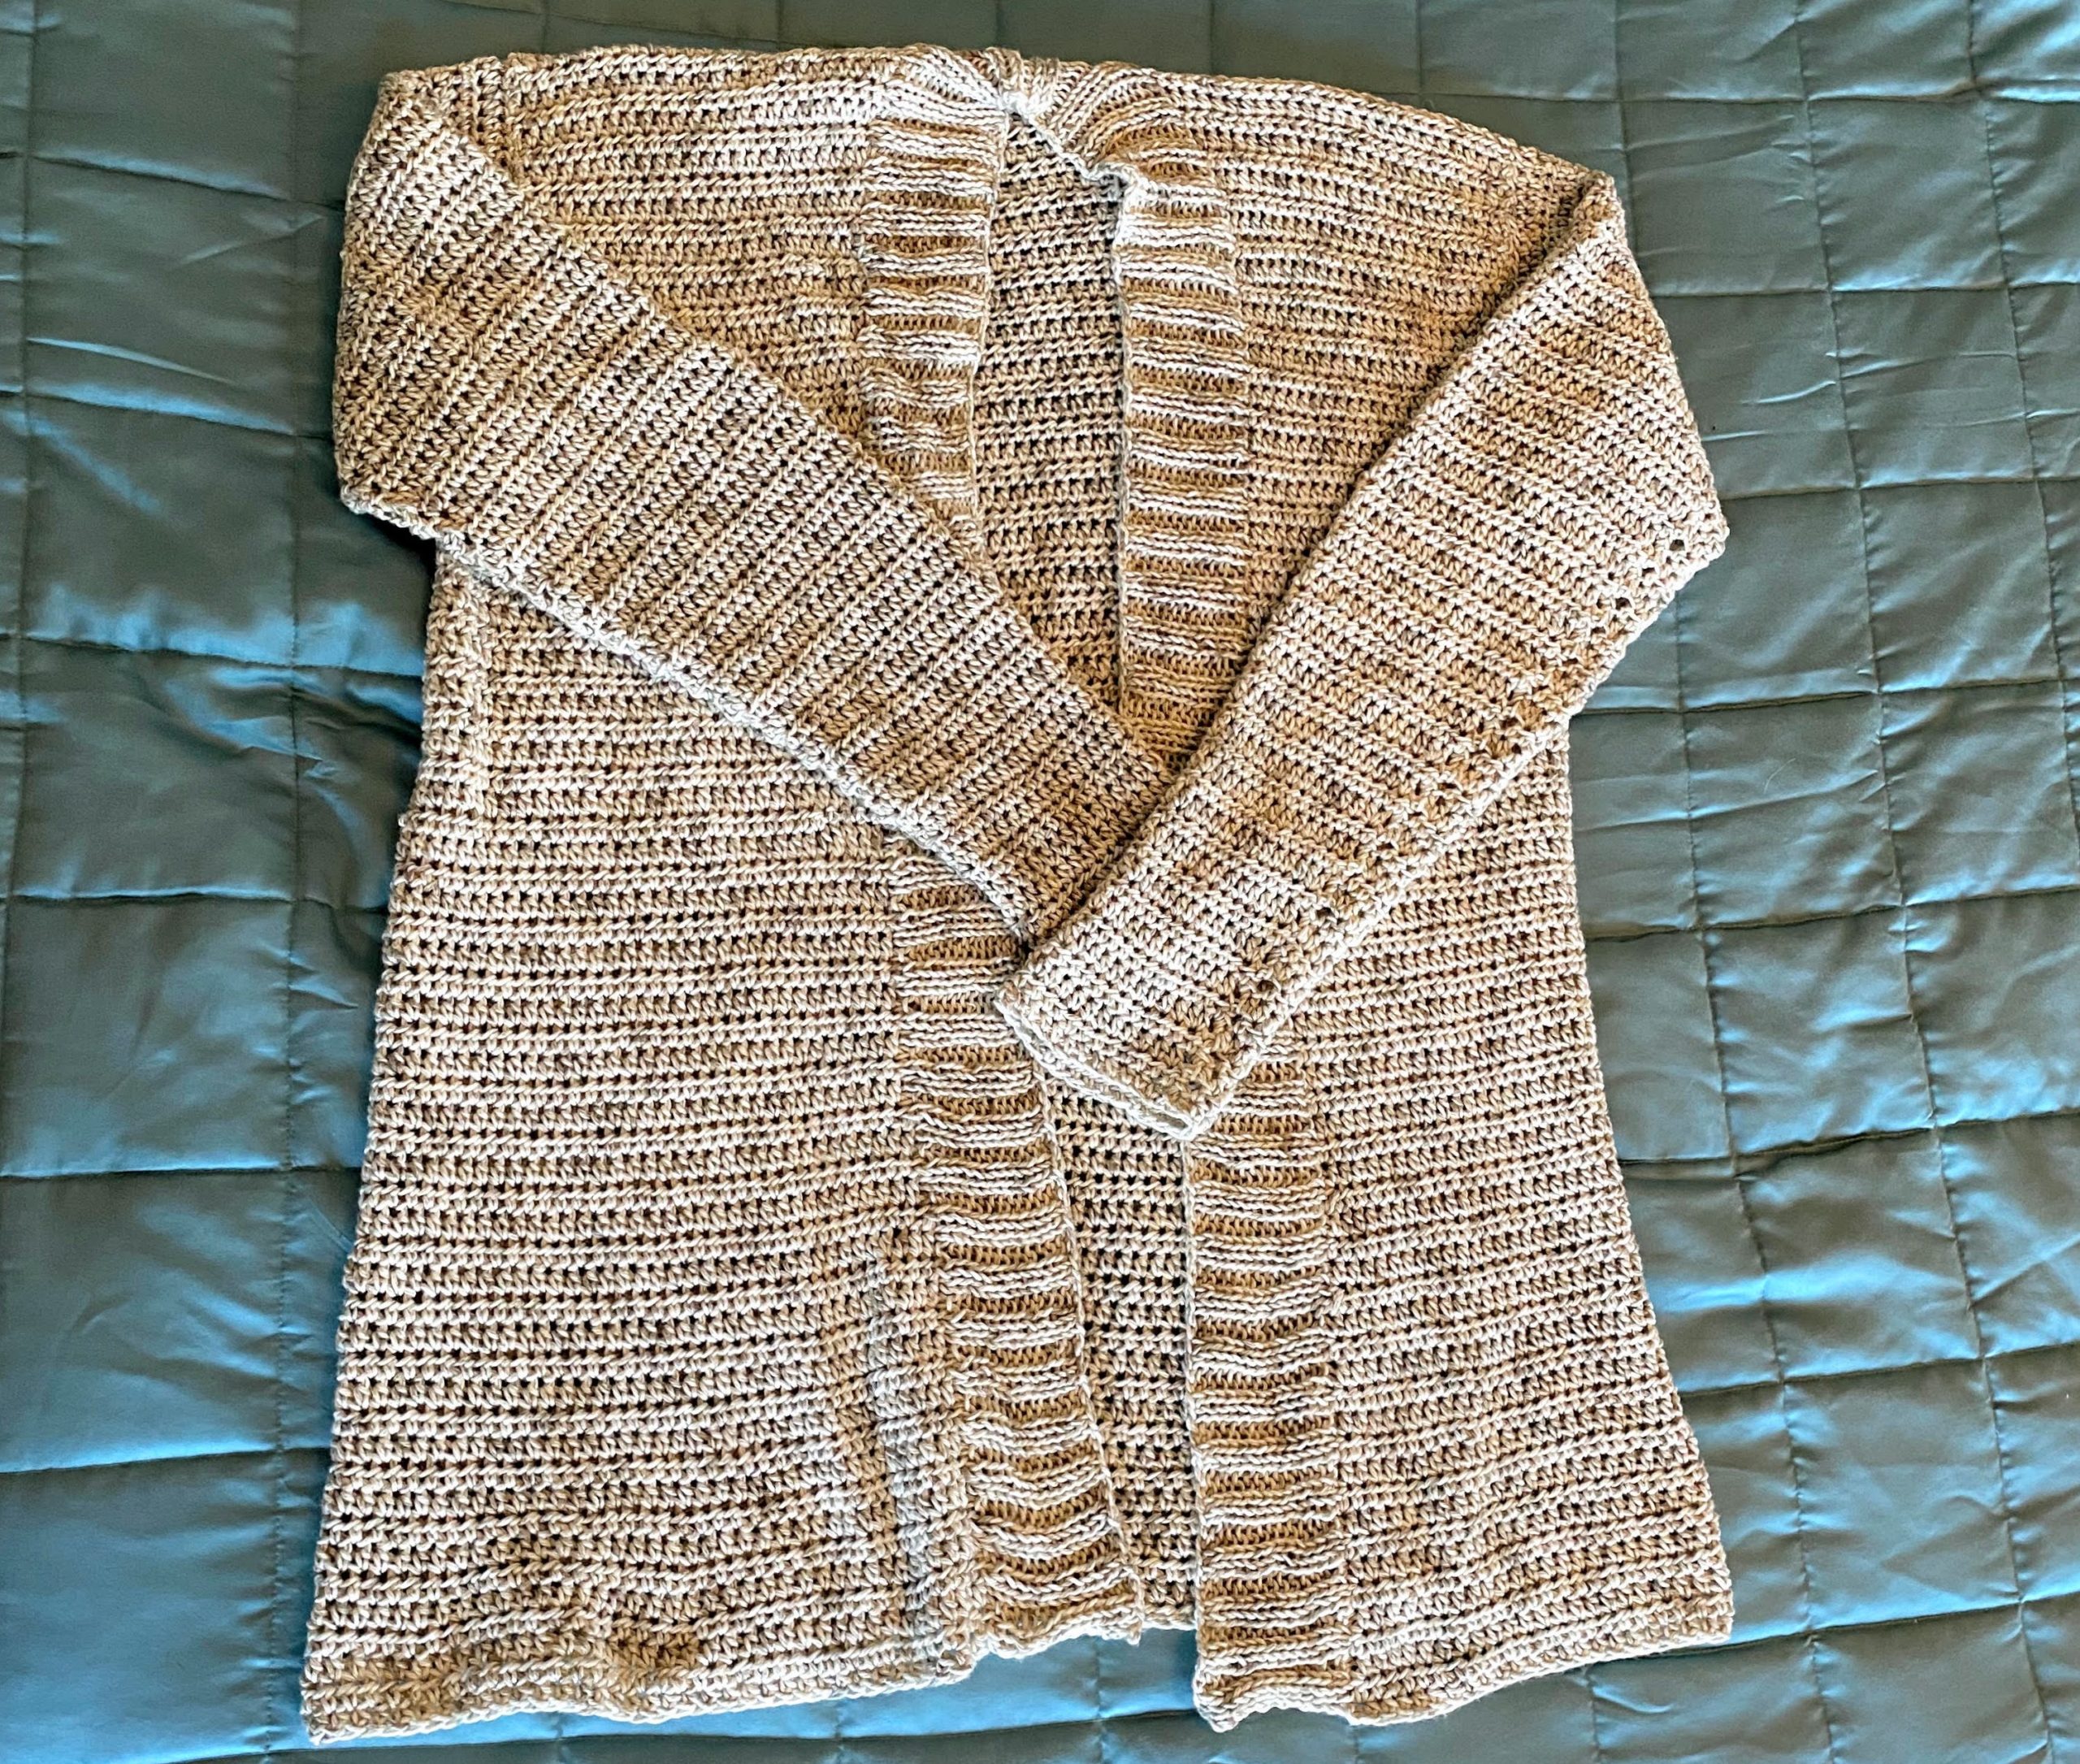 A crocheted cardigan